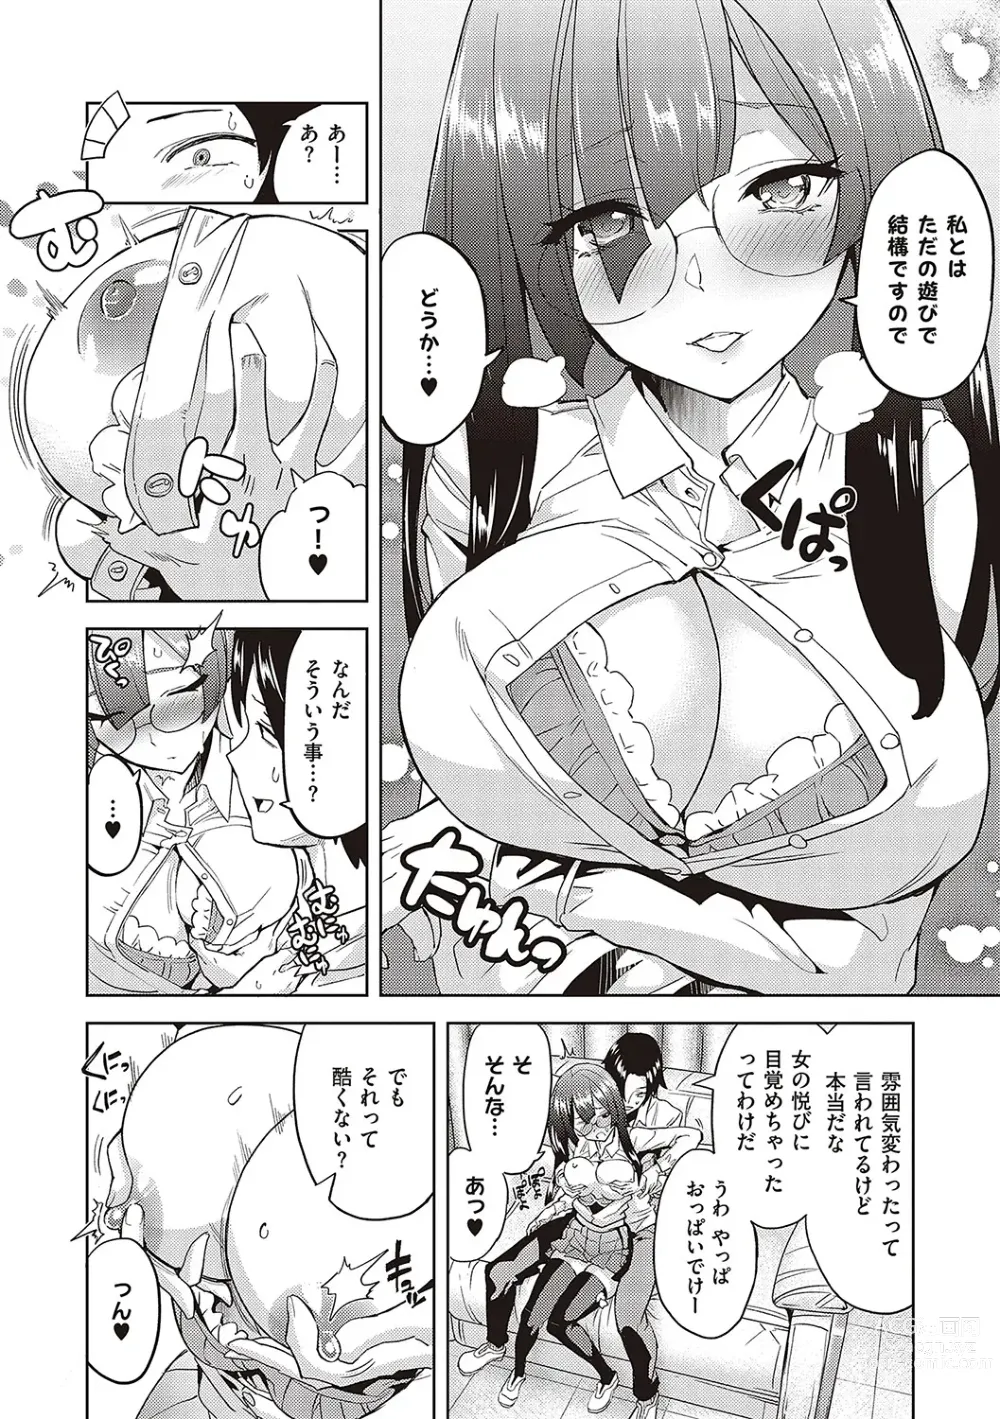 Page 9 of manga Akuma Demo Asobi Desu